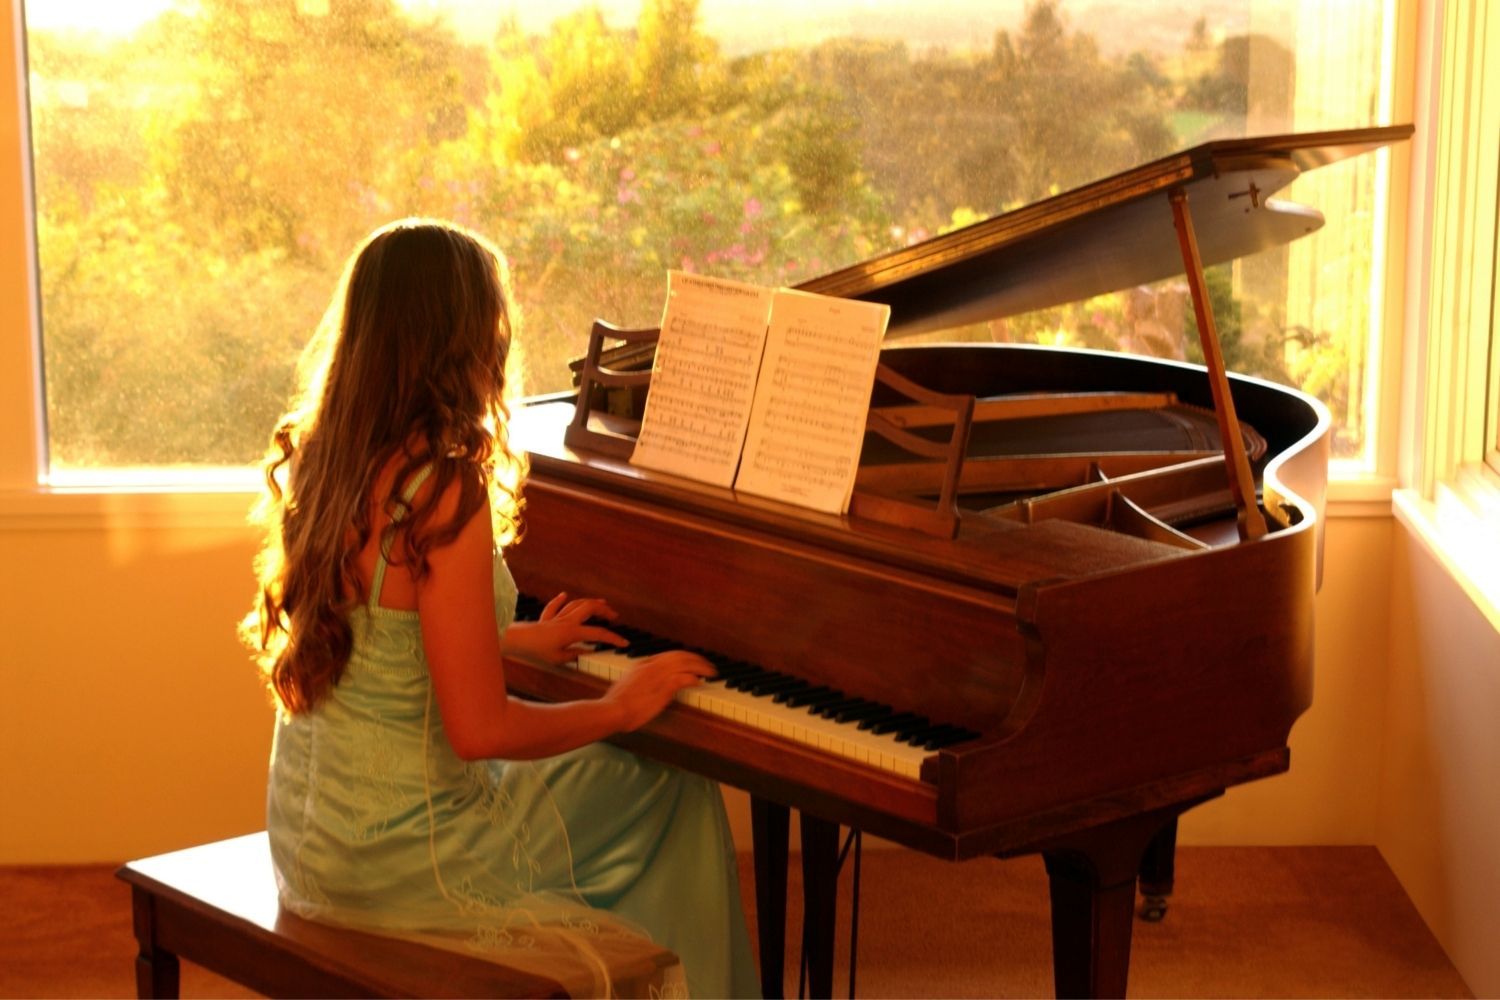 Teen Girl Playing Piano